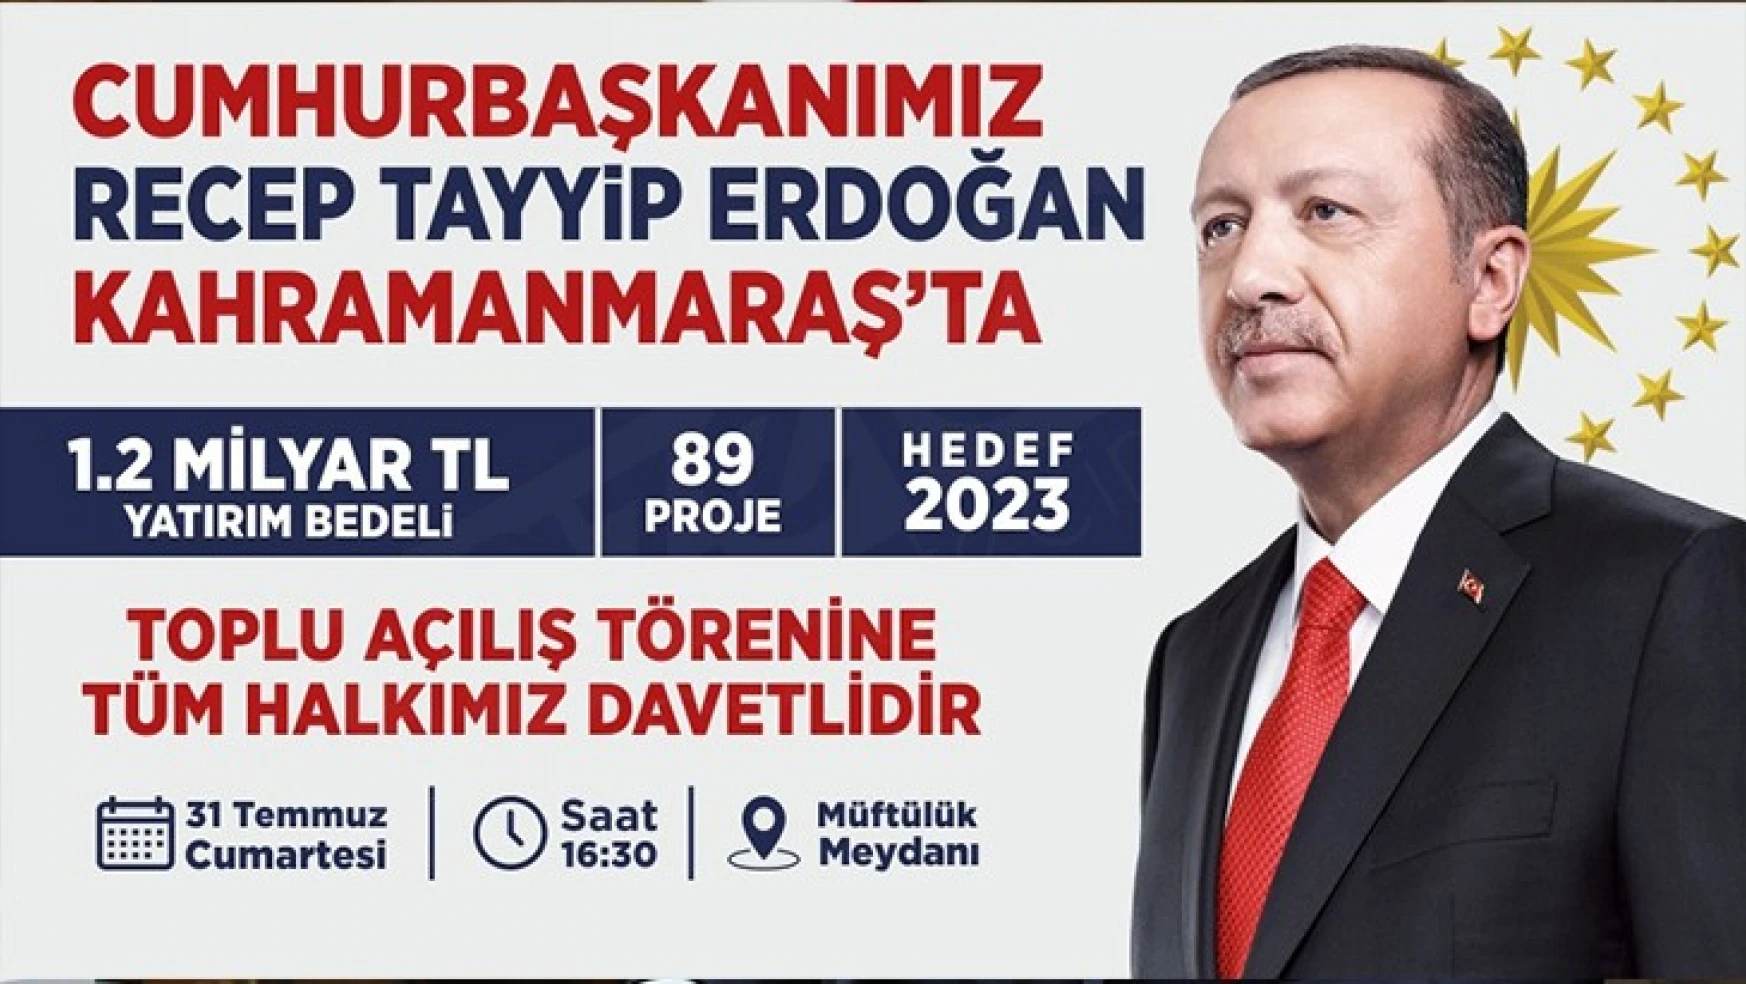 Cumhurbaşkanı Erdoğan'ın Kahramanmaraş programı belli oldu